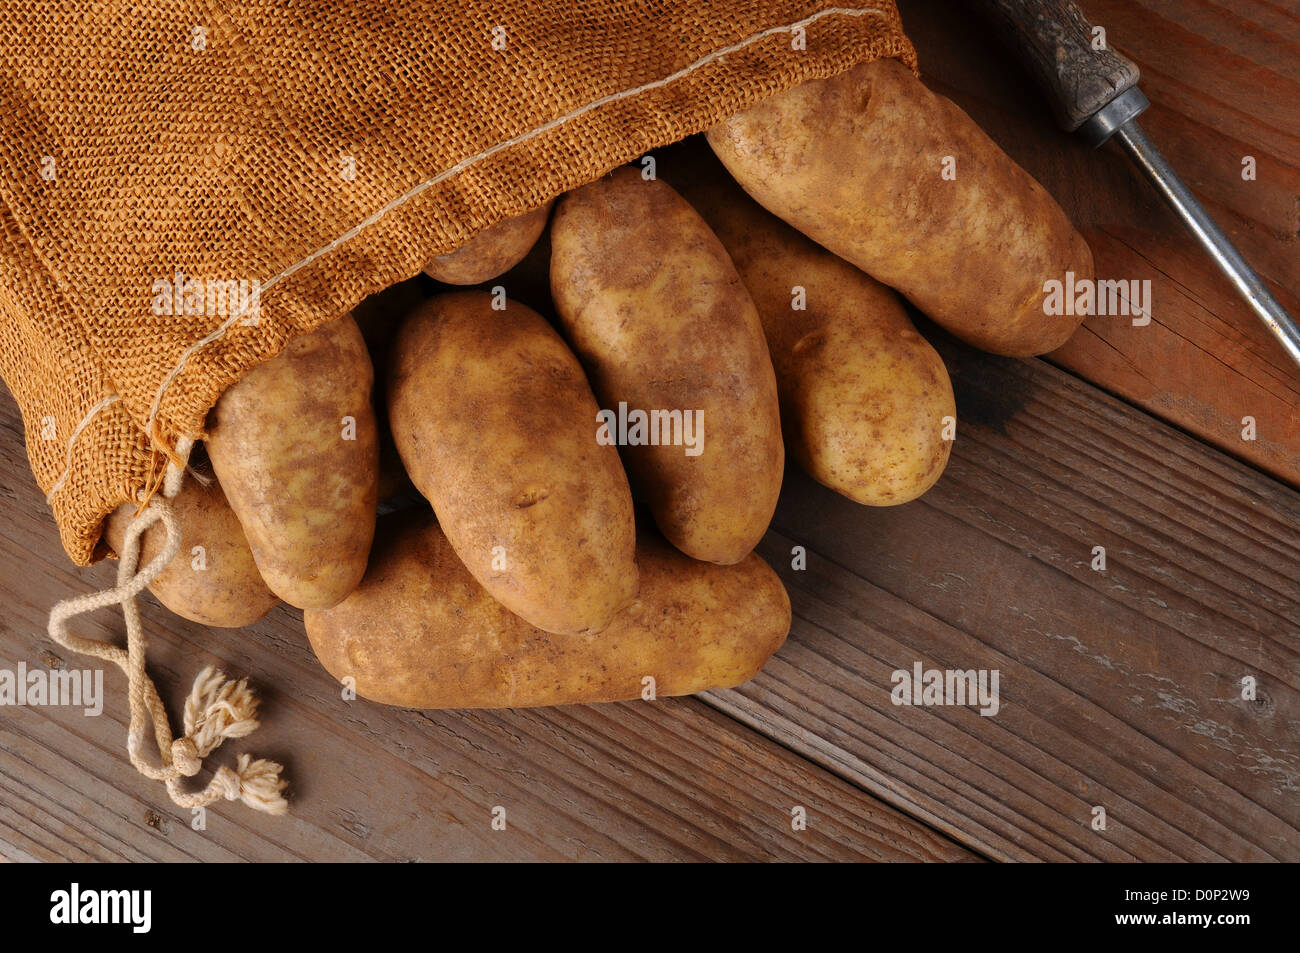 Une vue aérienne d'une toile sac de pommes de terre sur un fond de bois rustique. Format horizontal avec l'exemplaire de l'espace. Banque D'Images